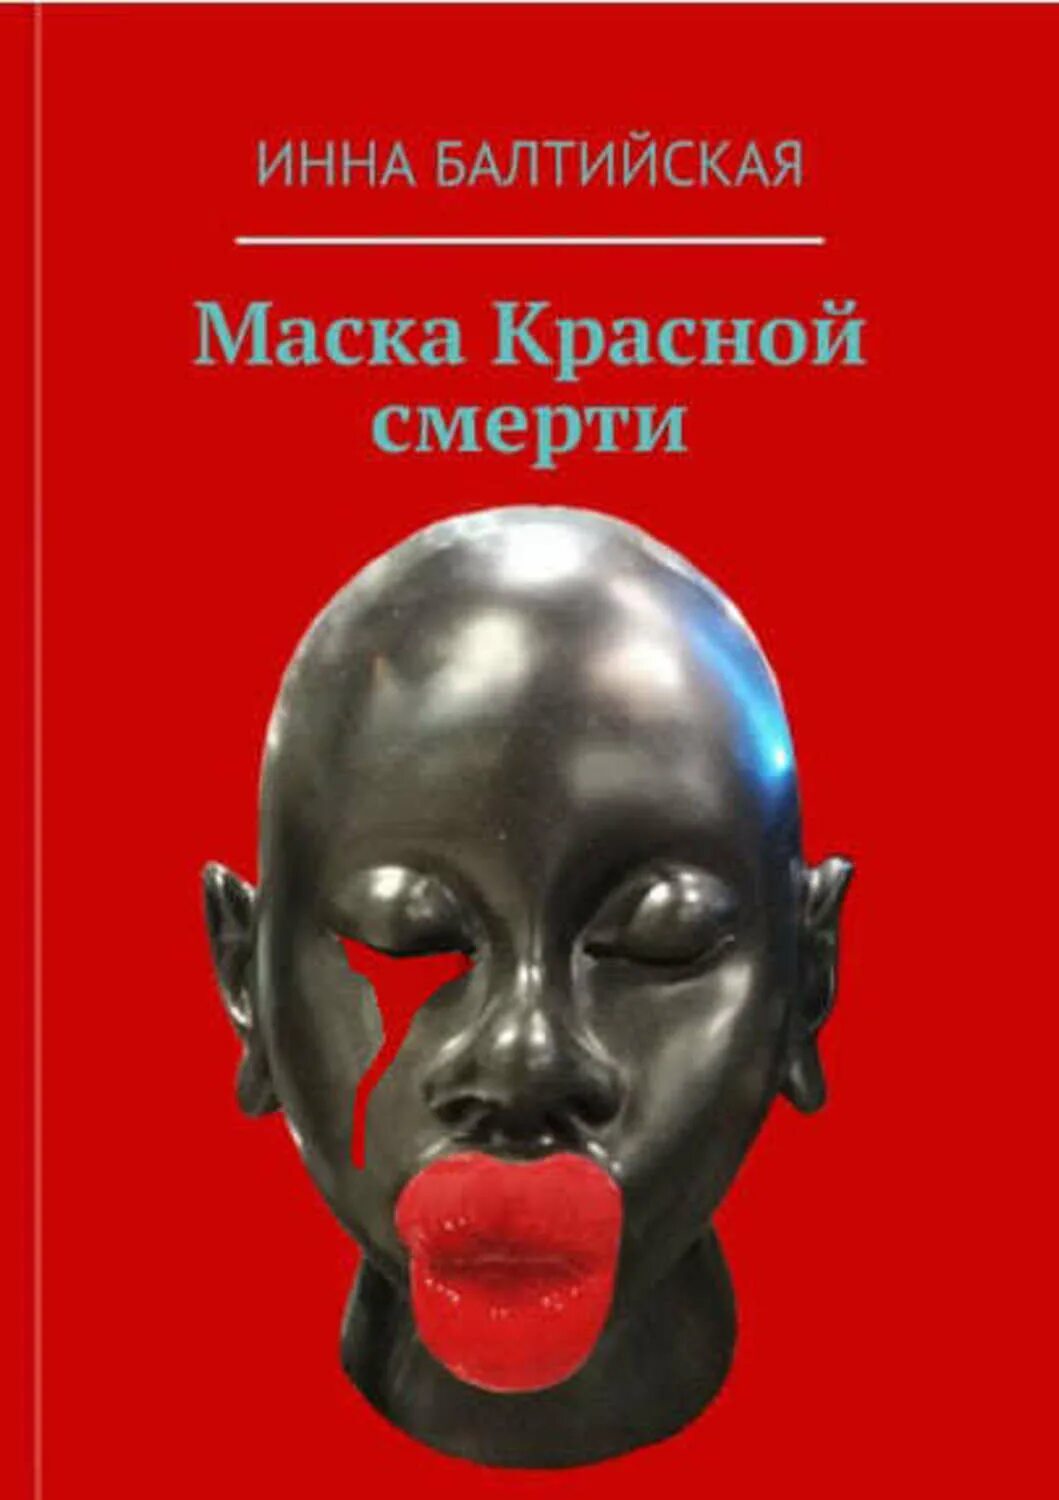 Книга без маски. Маска красной смерти книга. Маска книга. Балтийские маски.